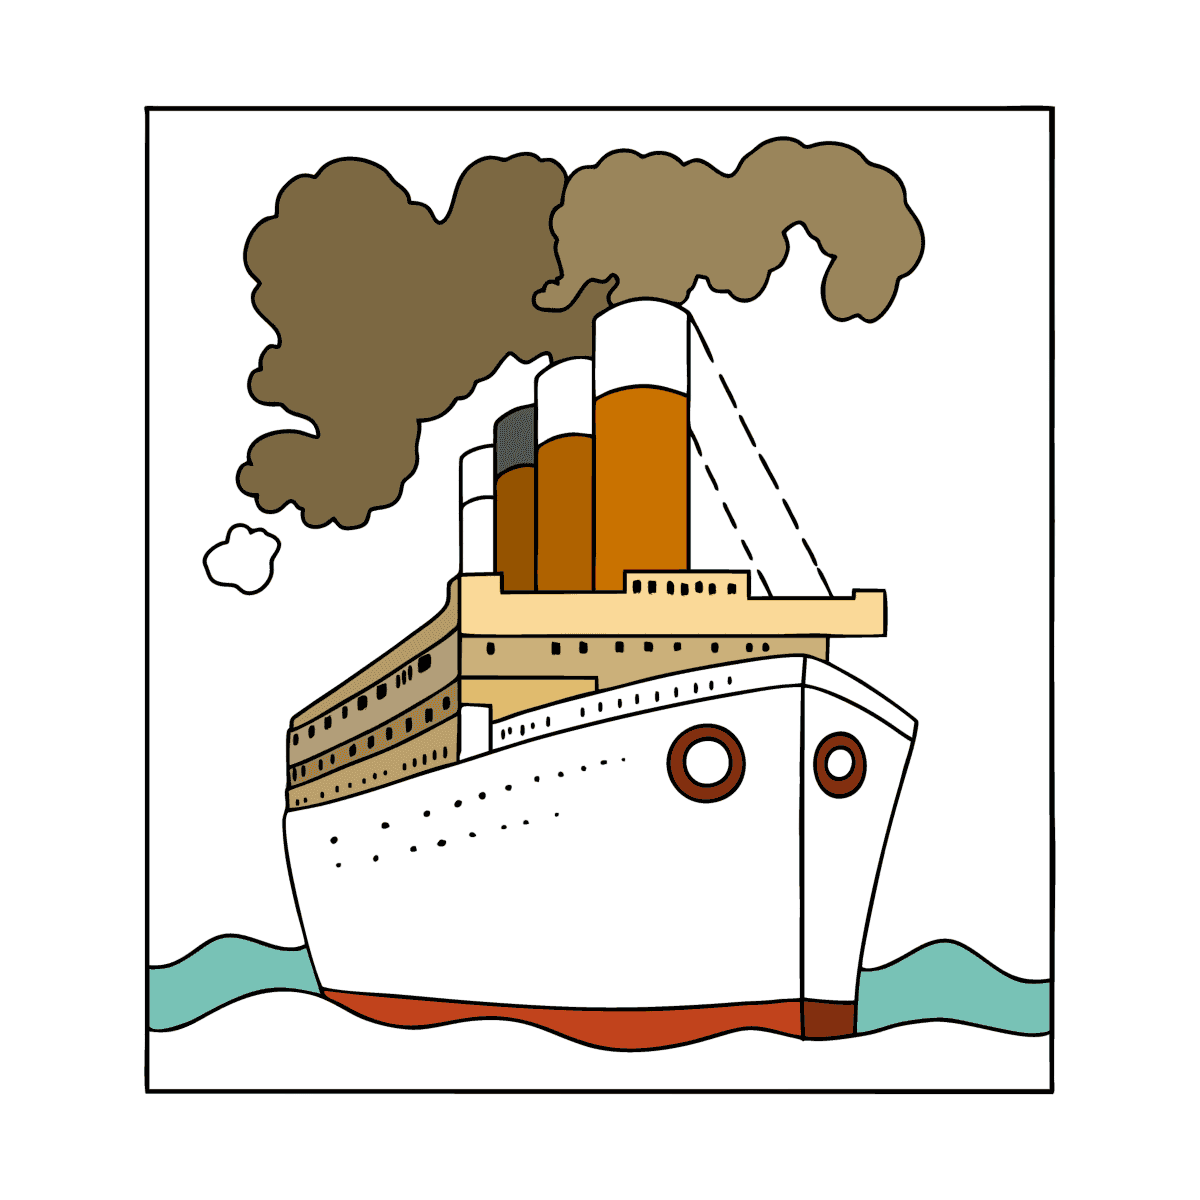 Рисунок судна или корабля